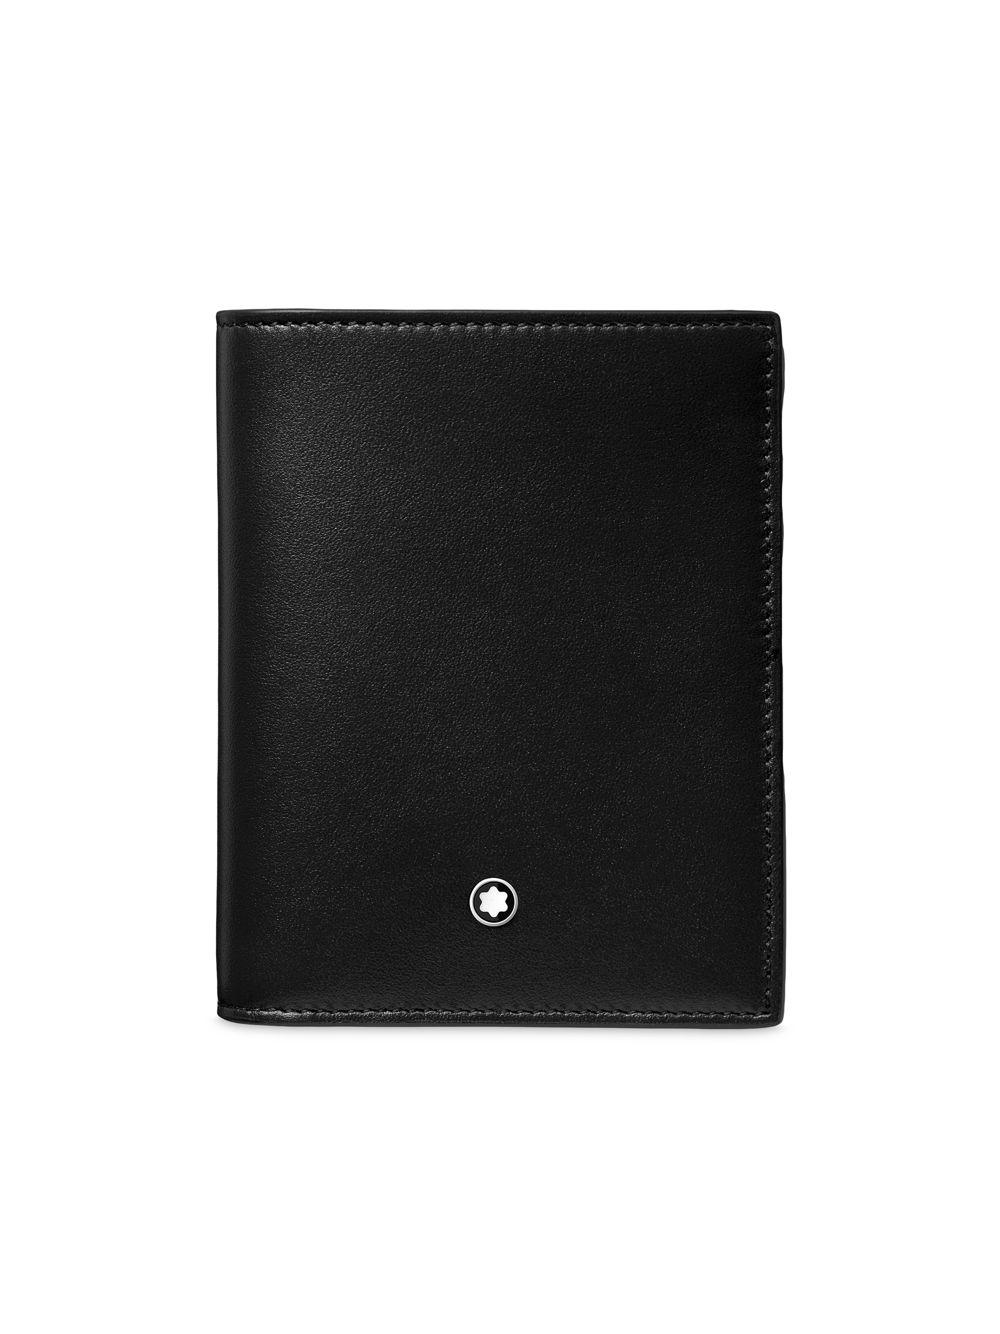 Компактный бумажник Meisterstück Montblanc, черный